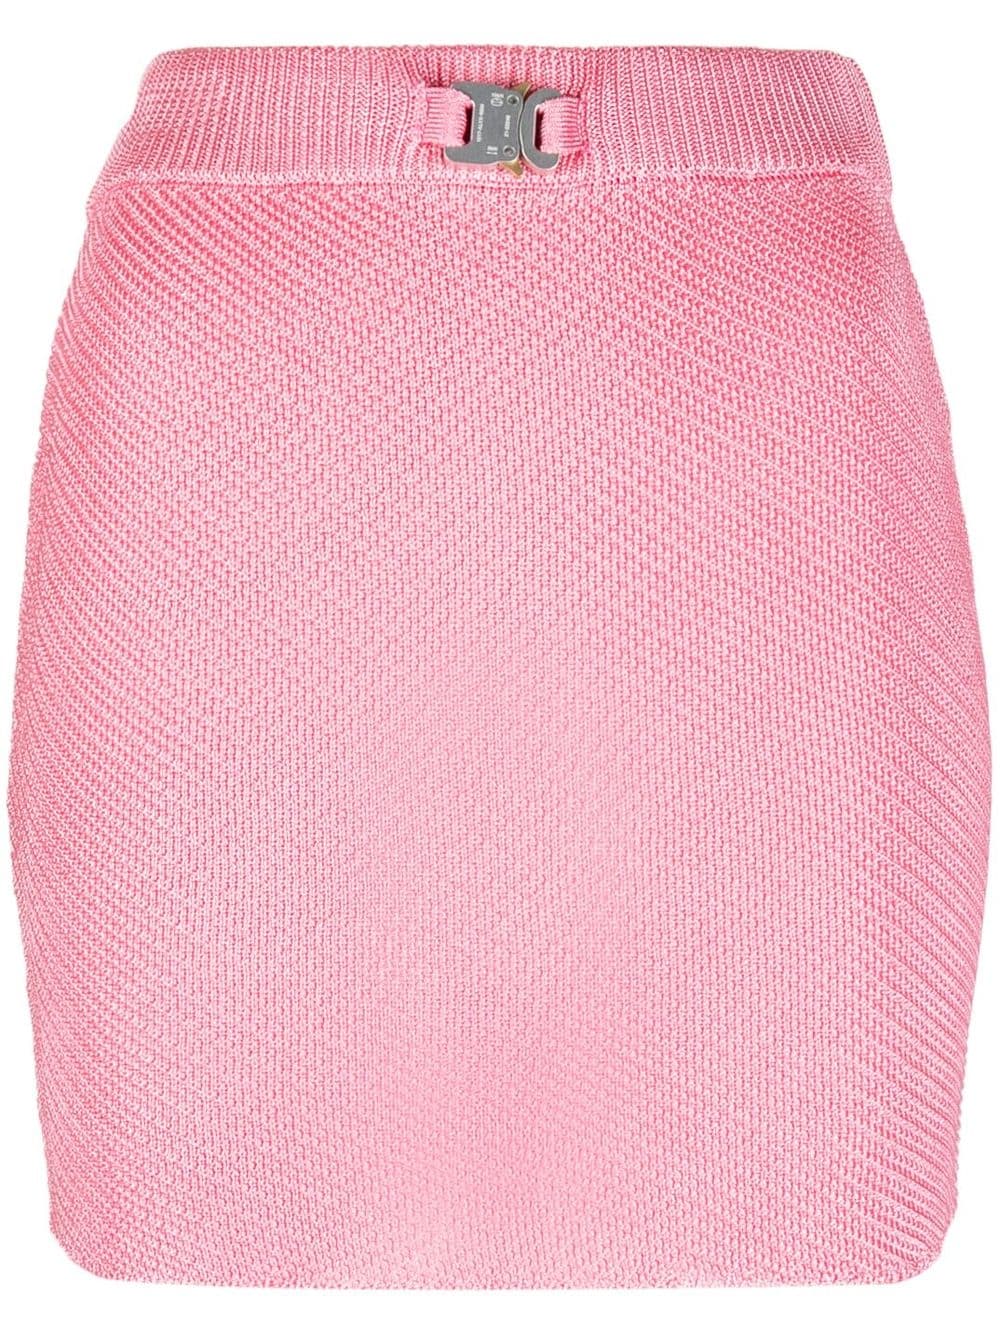 buckle-detail knit miniskirt